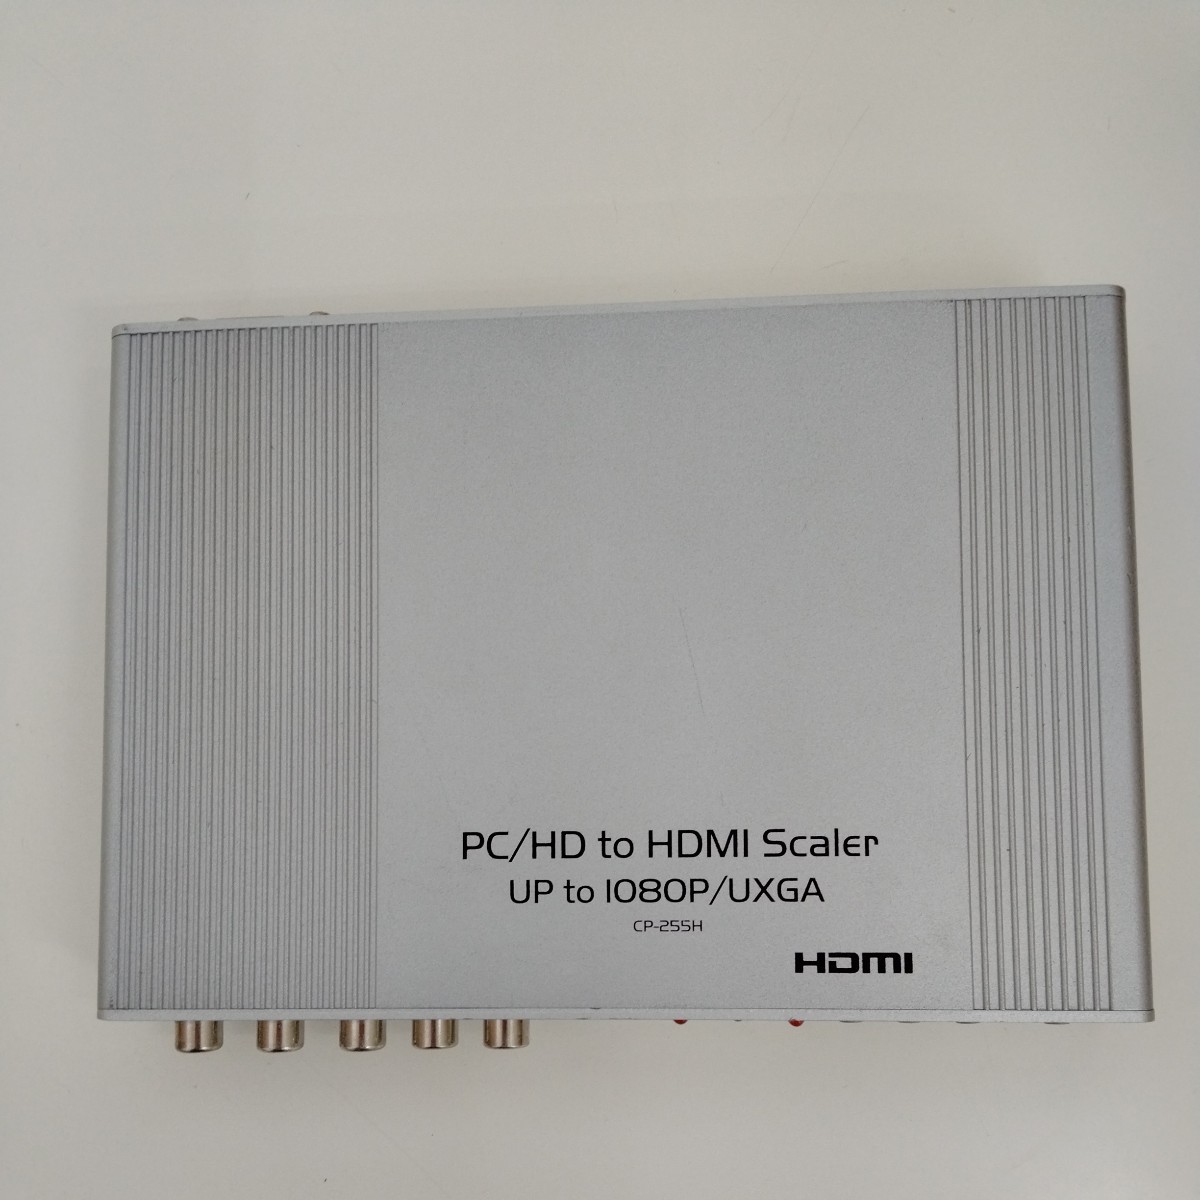 【長期保管】【当時物】【ジャンク品】HDMI PC/HD to HDMI Scaler UP to 1080P/UXGA CP-255H②の画像1